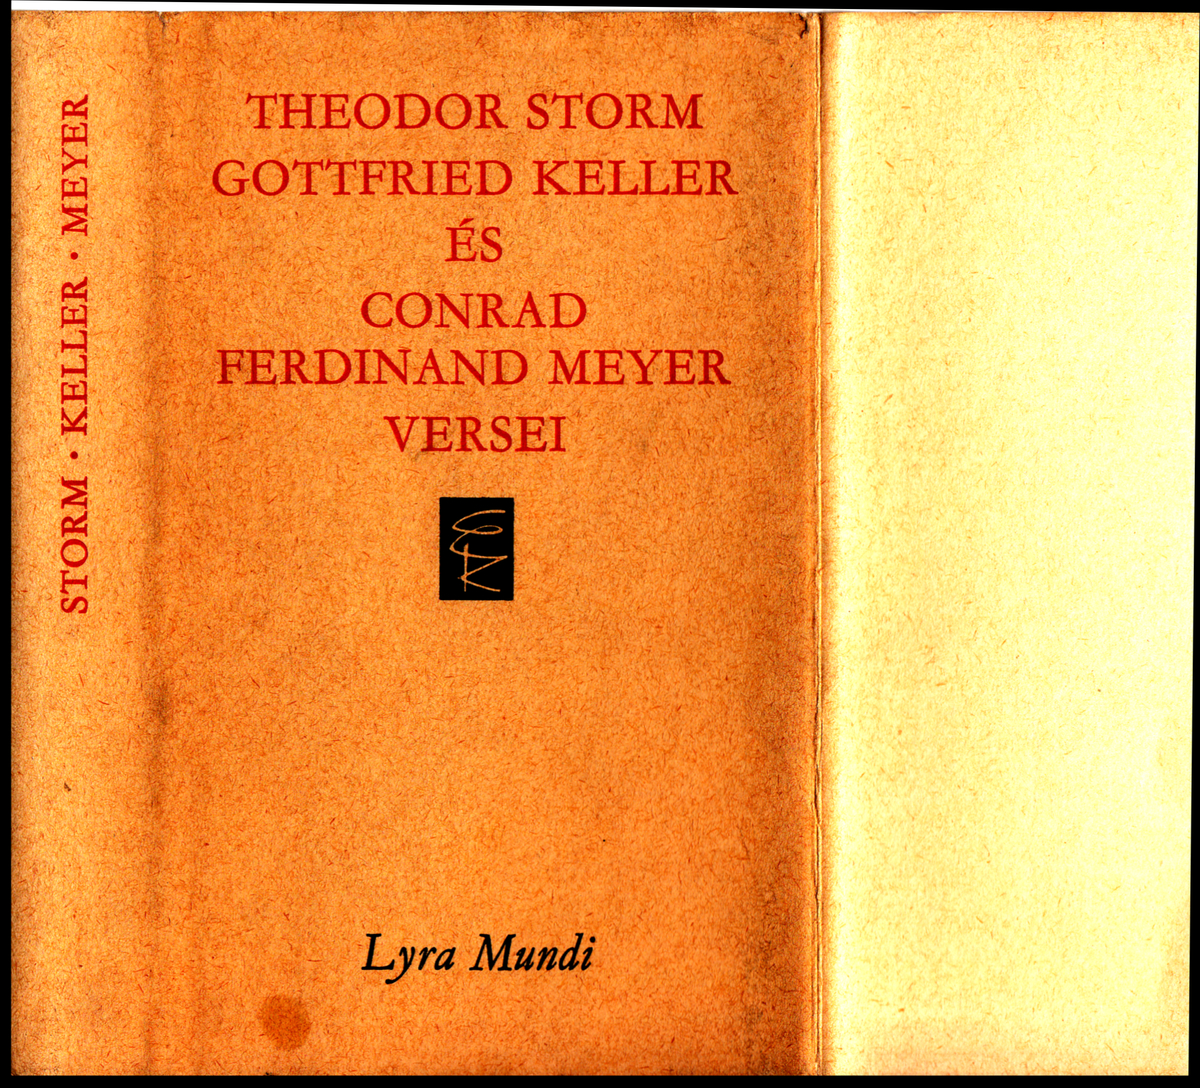 Storm, Theodor: Theodor Storm, Gottfried Keller és Conrad Ferdinand Meyer versei | PIM Gyűjtemények